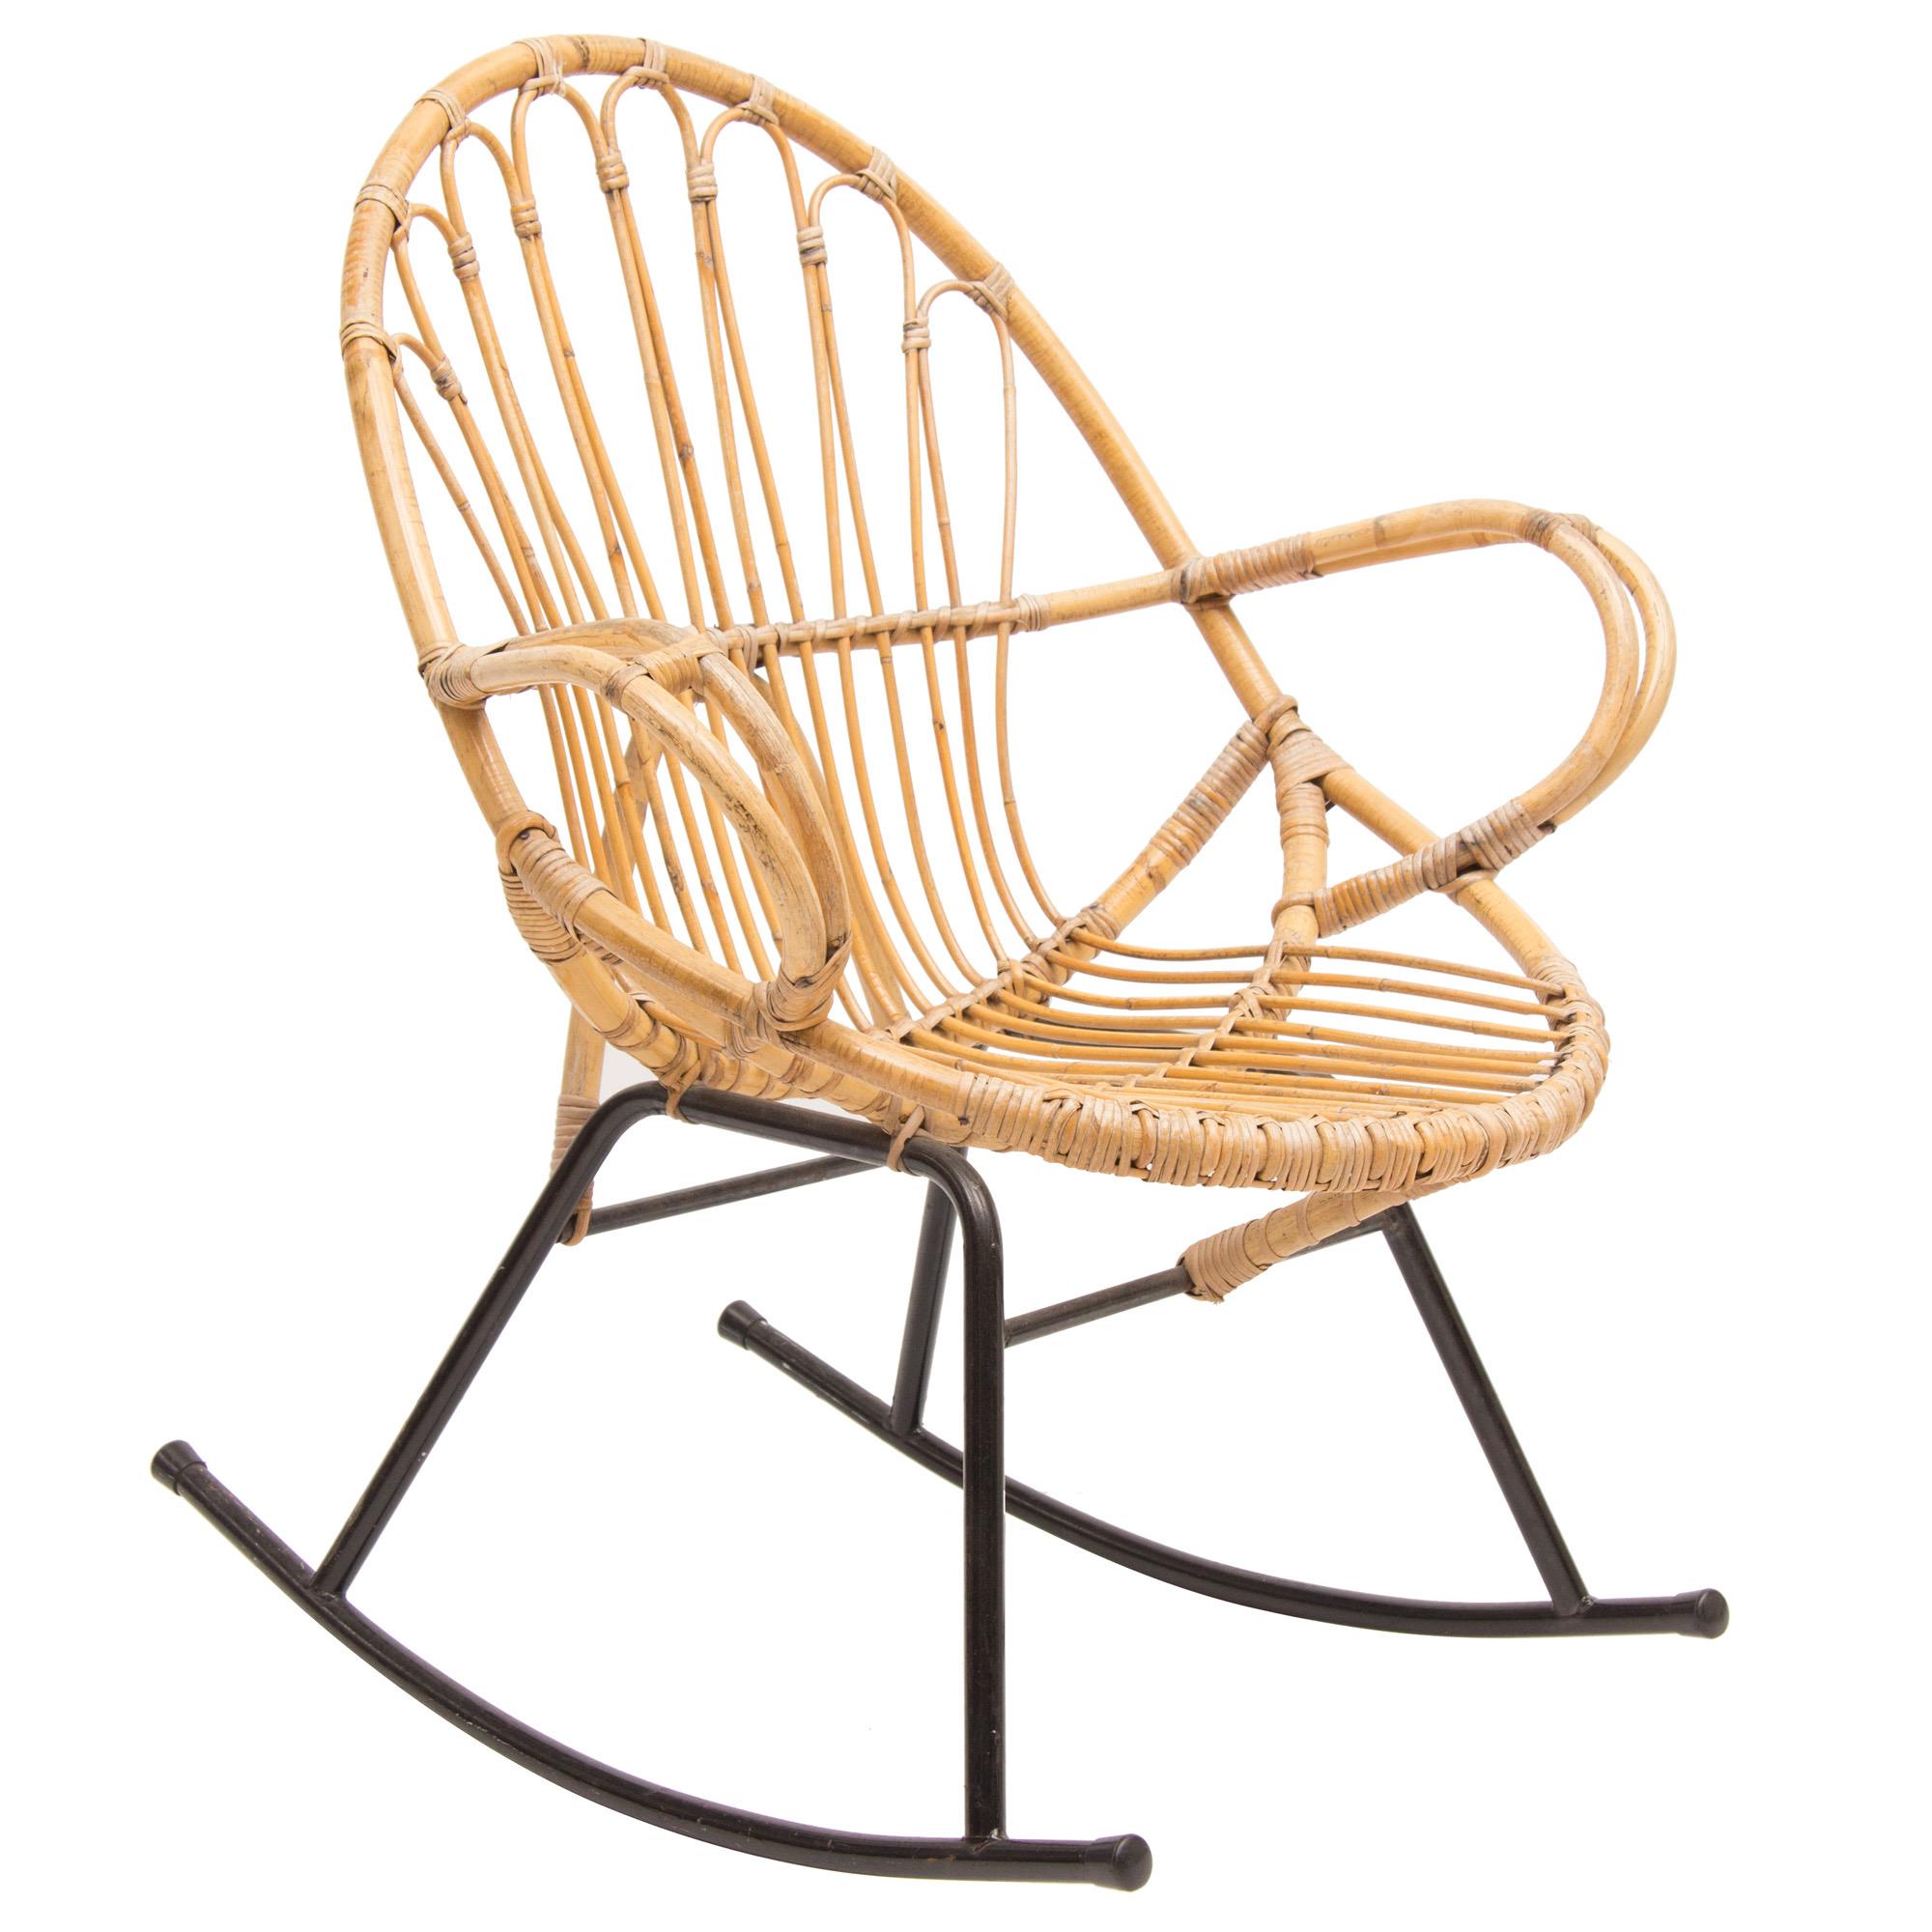 Getalenteerd de ober Anoniem Midcentury Rocking Chair by Rohe Schommelstoel For Sale at 1stDibs | teak  schommelstoel, tapiovaara schommelstoel